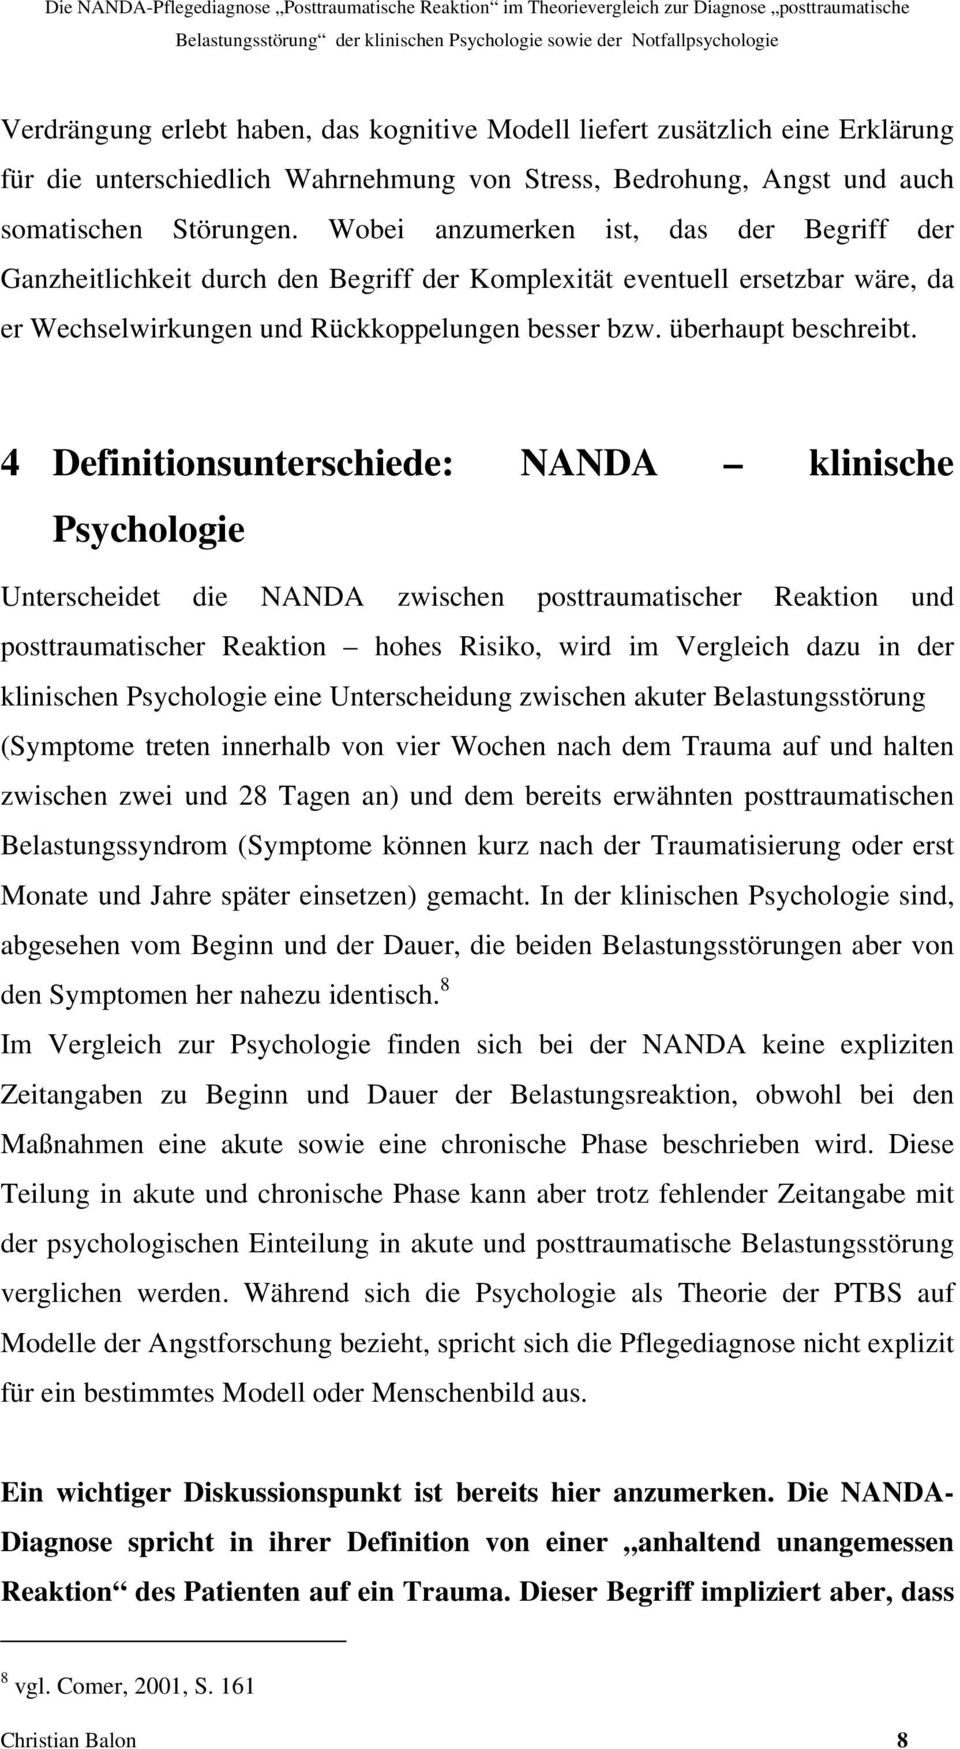 4 Definitionsunterschiede: NANDA klinische Psychologie Unterscheidet die NANDA zwischen posttraumatischer Reaktion und posttraumatischer Reaktion hohes Risiko, wird im Vergleich dazu in der